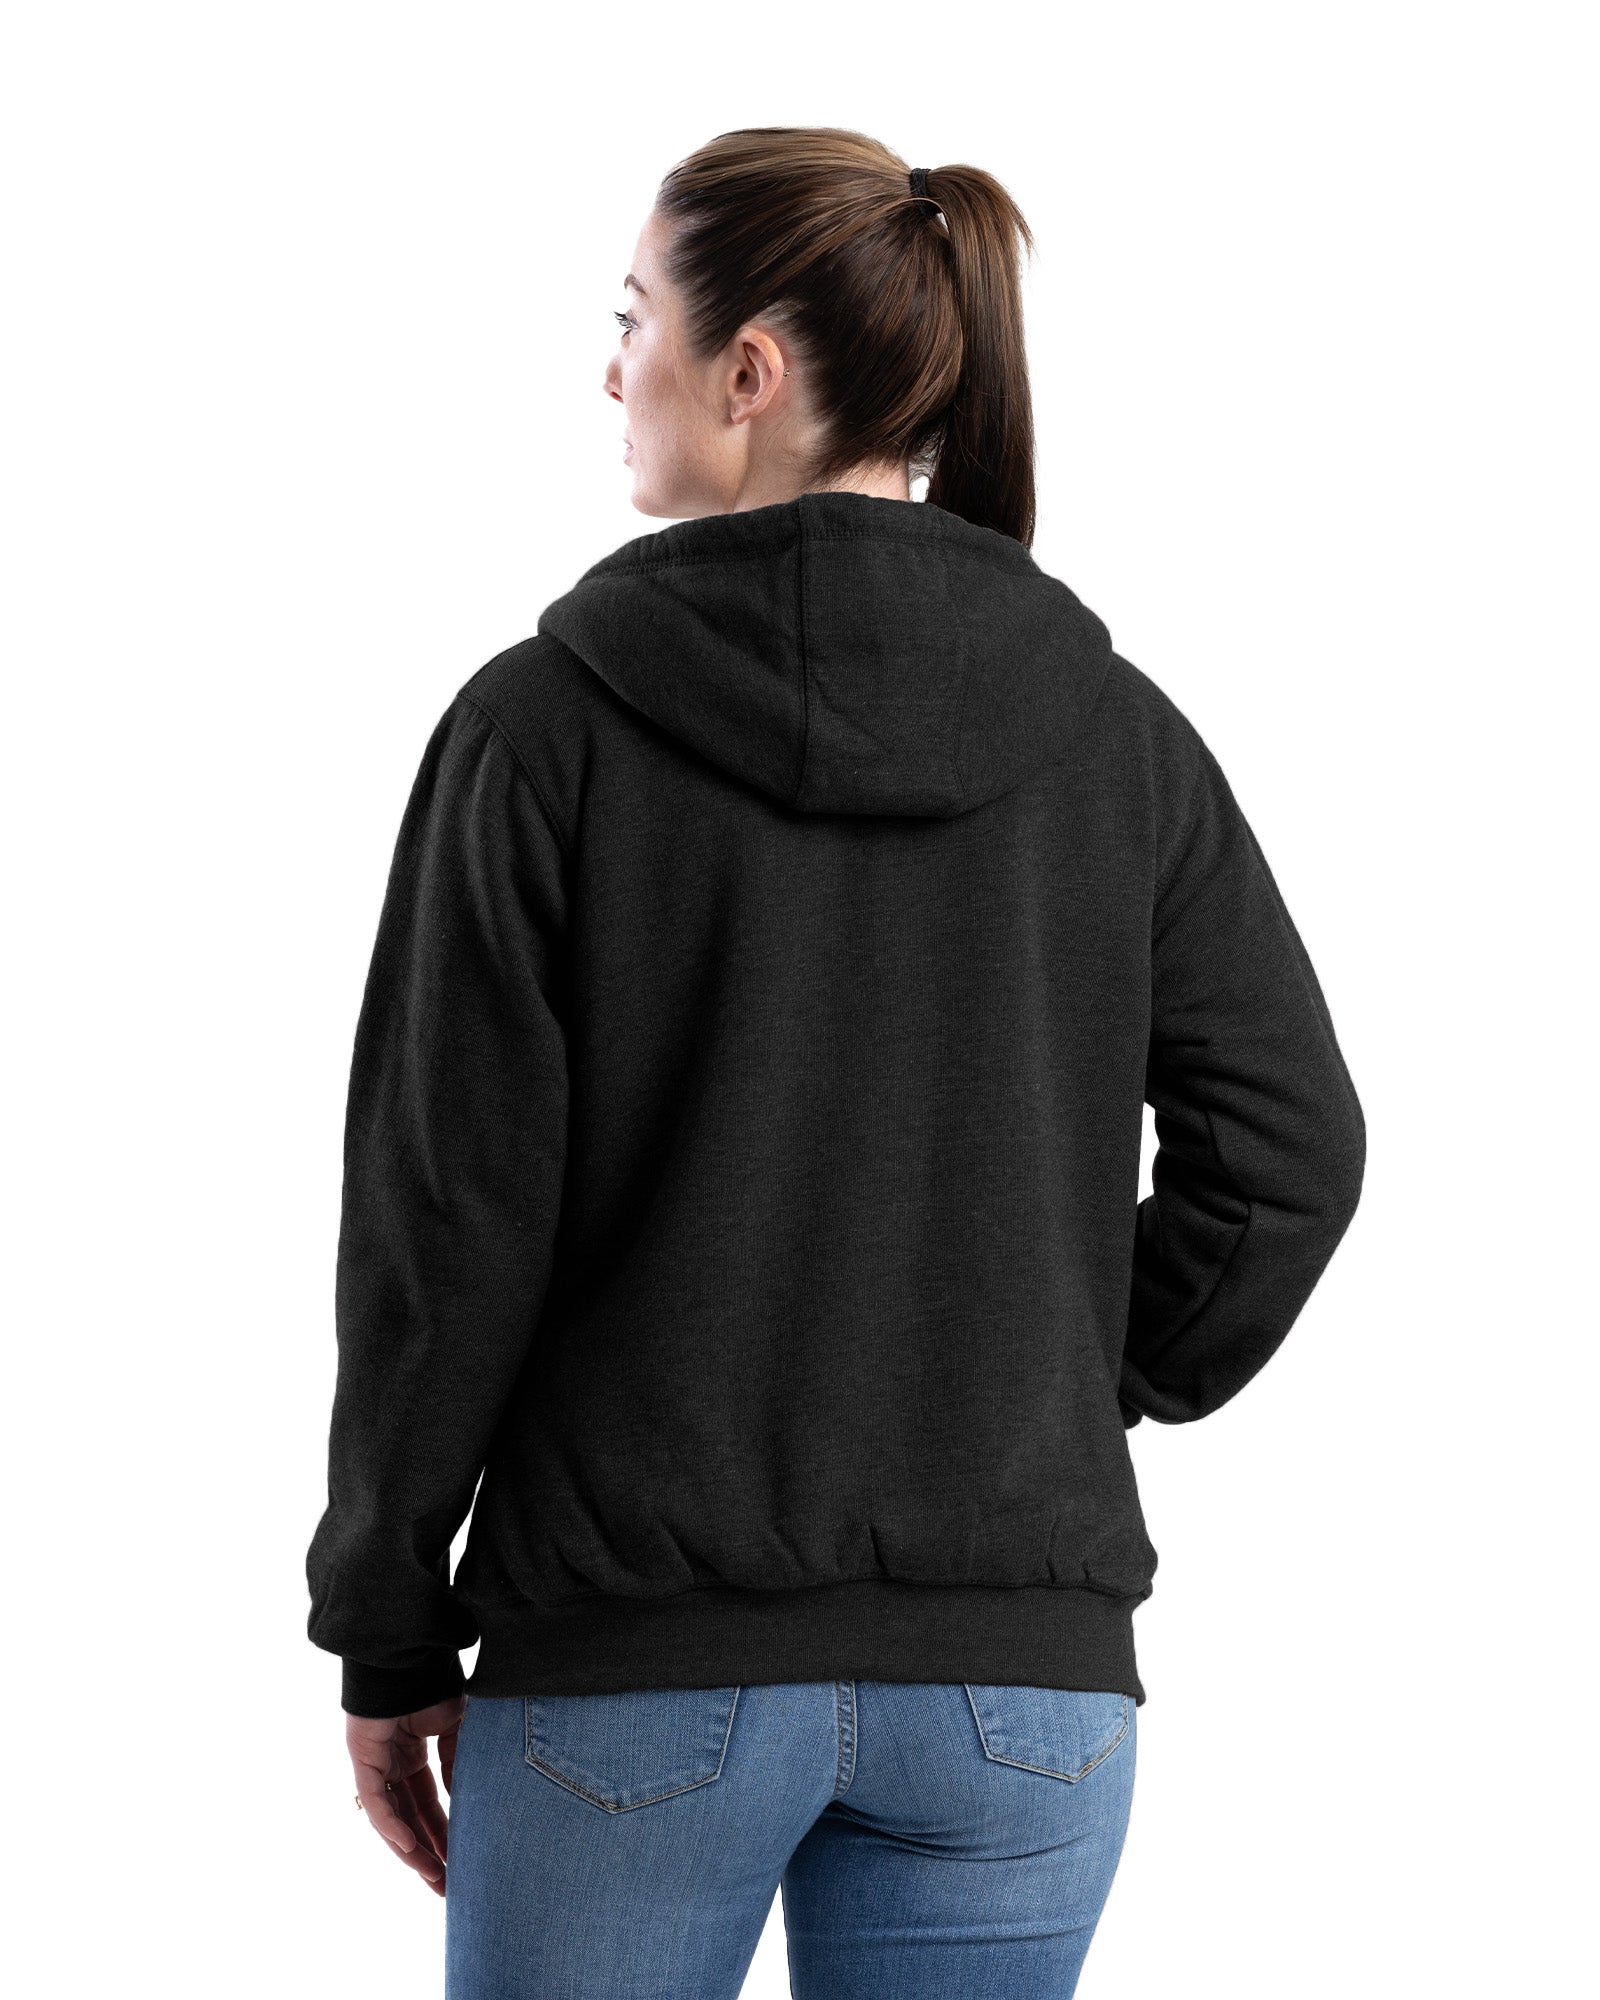 Women's Gray Full Zip Hooded Sweatshirt